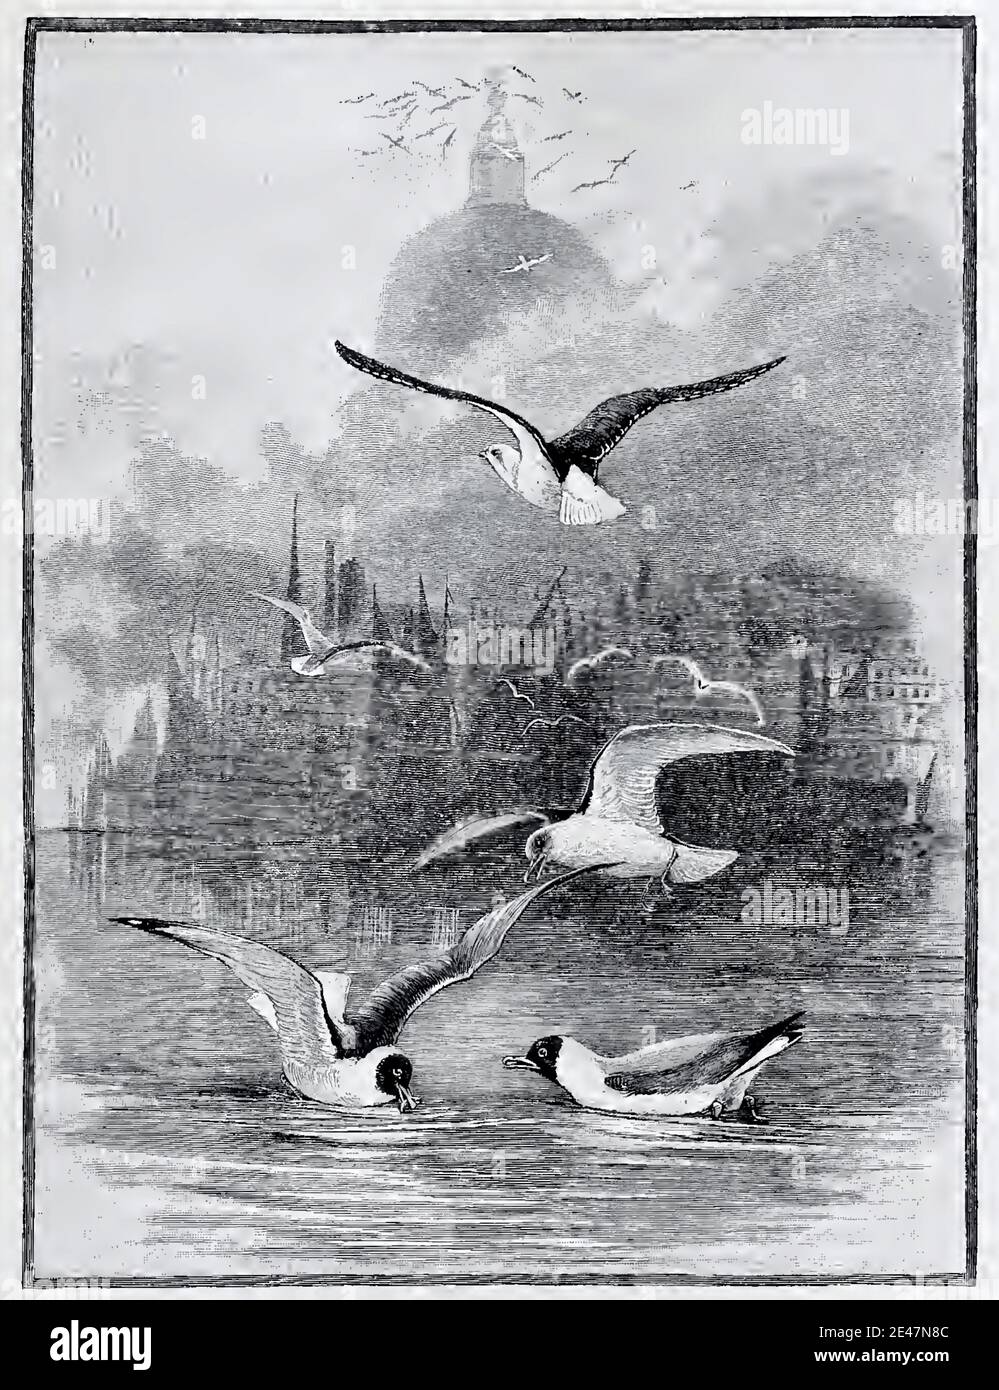 Illustrazione d'epoca dell'artista faunistico Charles Whymple intitolata Gulls on the Thames. L'immagine mostra le gabbie sul Tamigi con St Paul's nelle vicinanze. Foto Stock